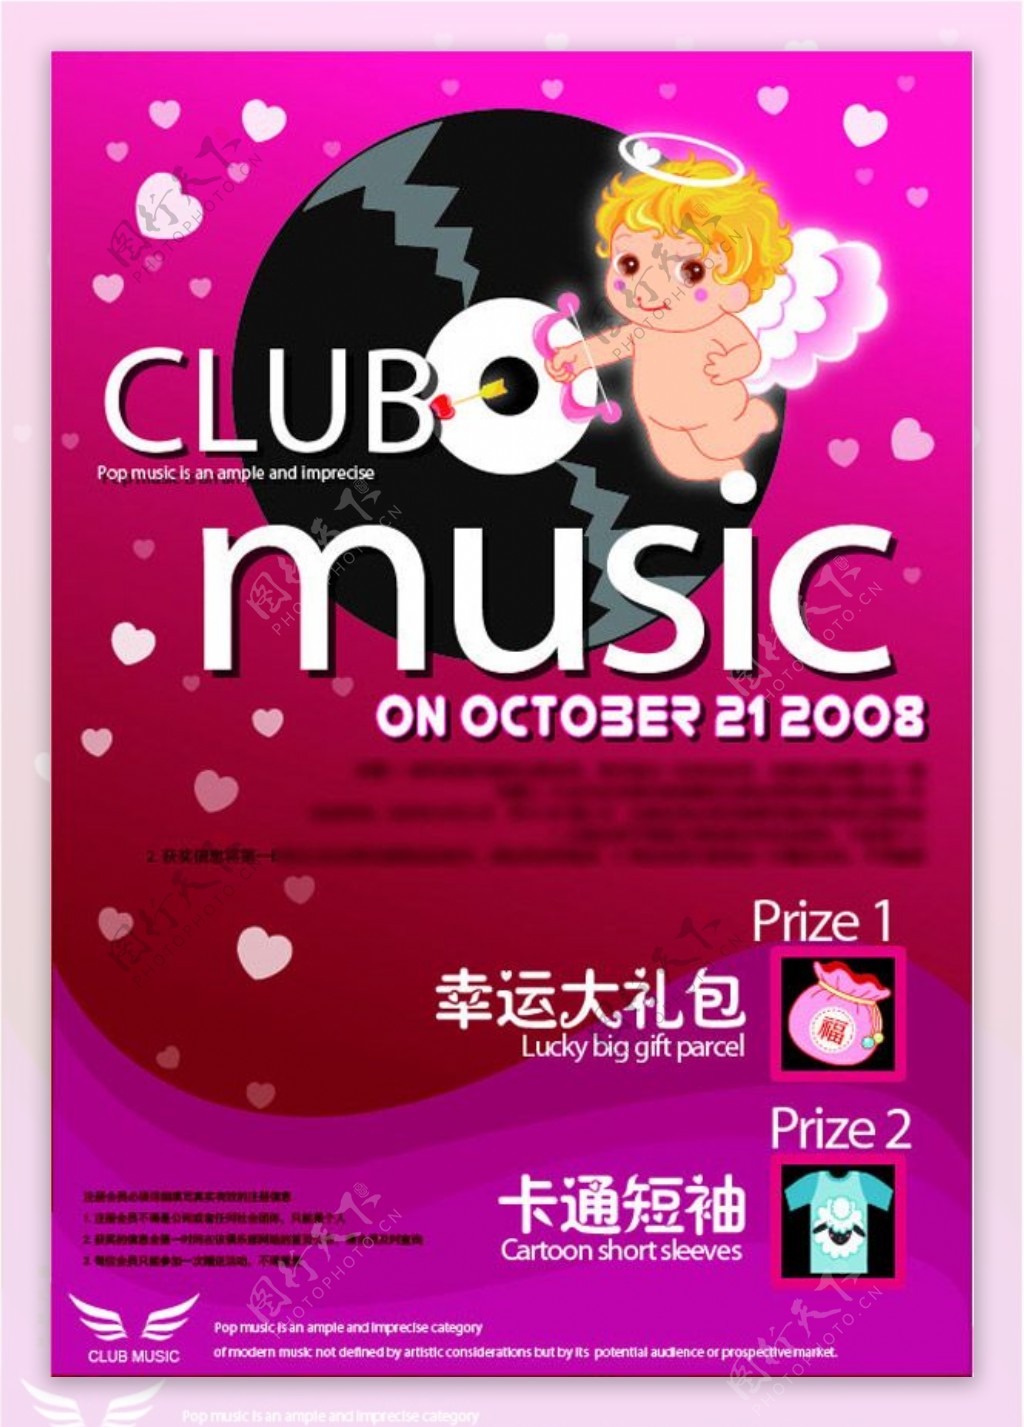 俱乐部音乐活动海报设计免费